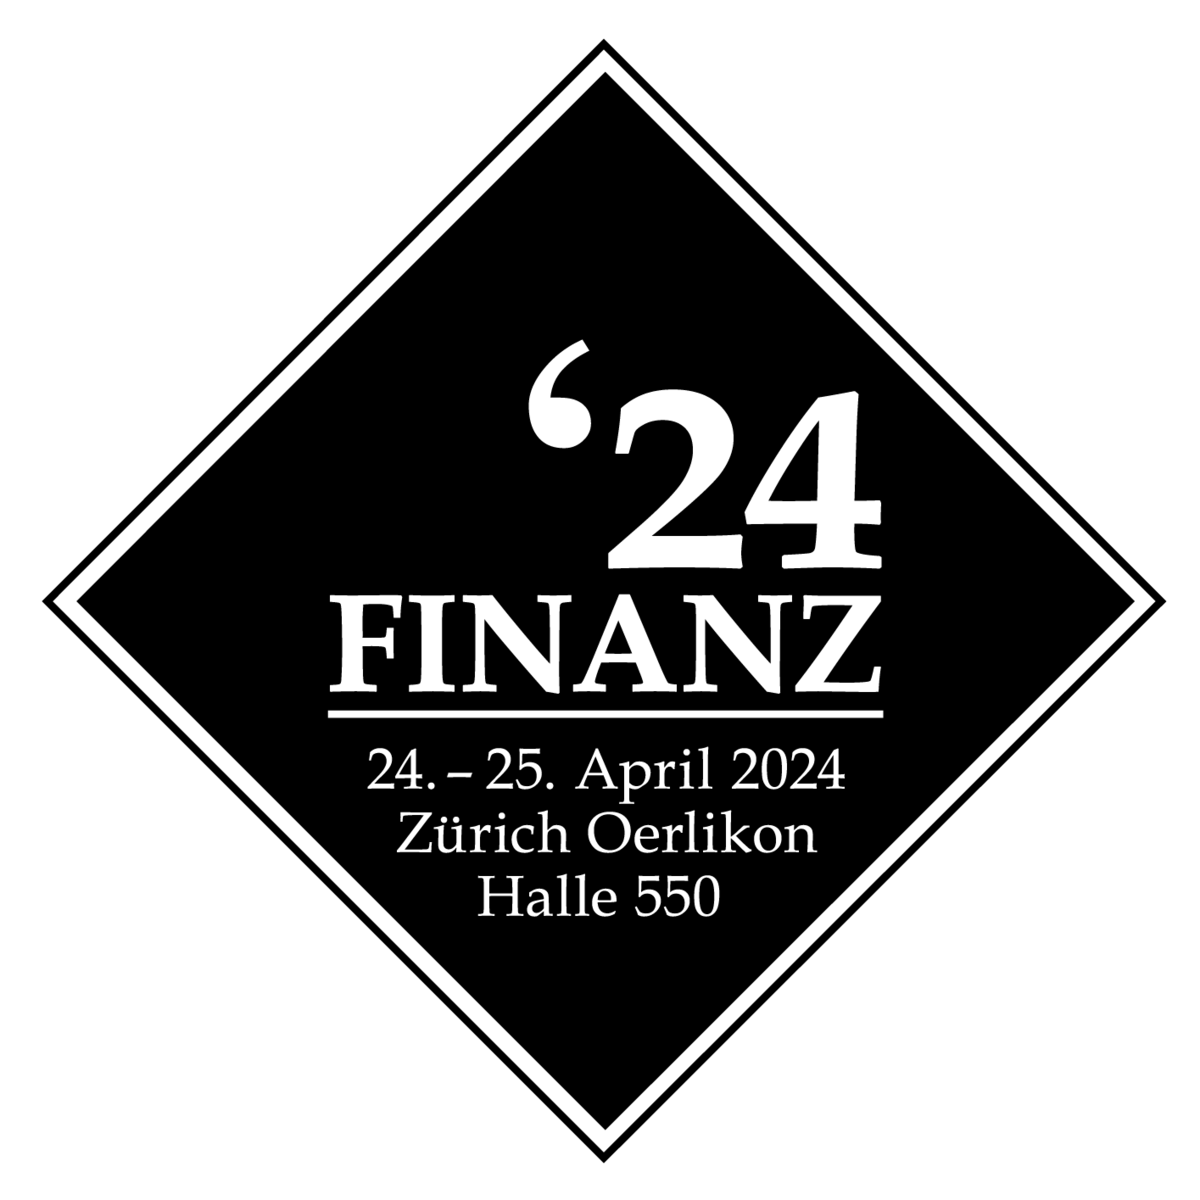 FINANZ'24 Financial Fair